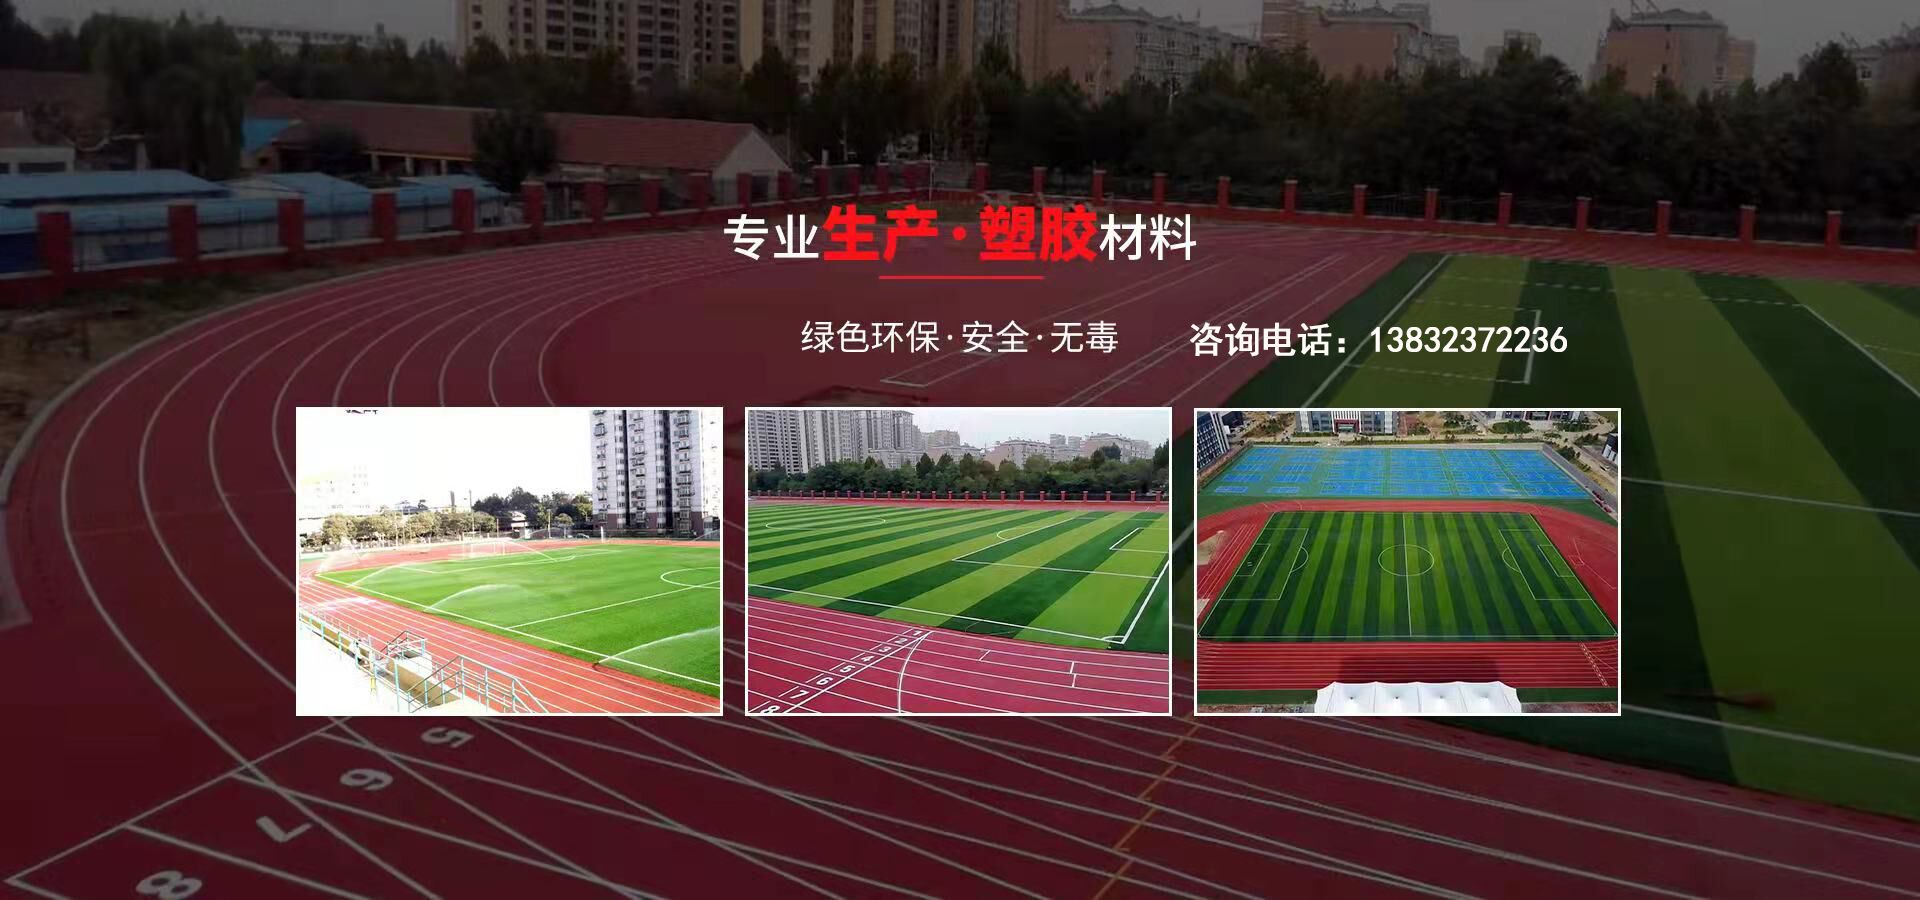 硅pu、硅pu球场、塑胶跑道、塑胶球场、塑胶跑道施工-英亚体育(中国)集团有限公司